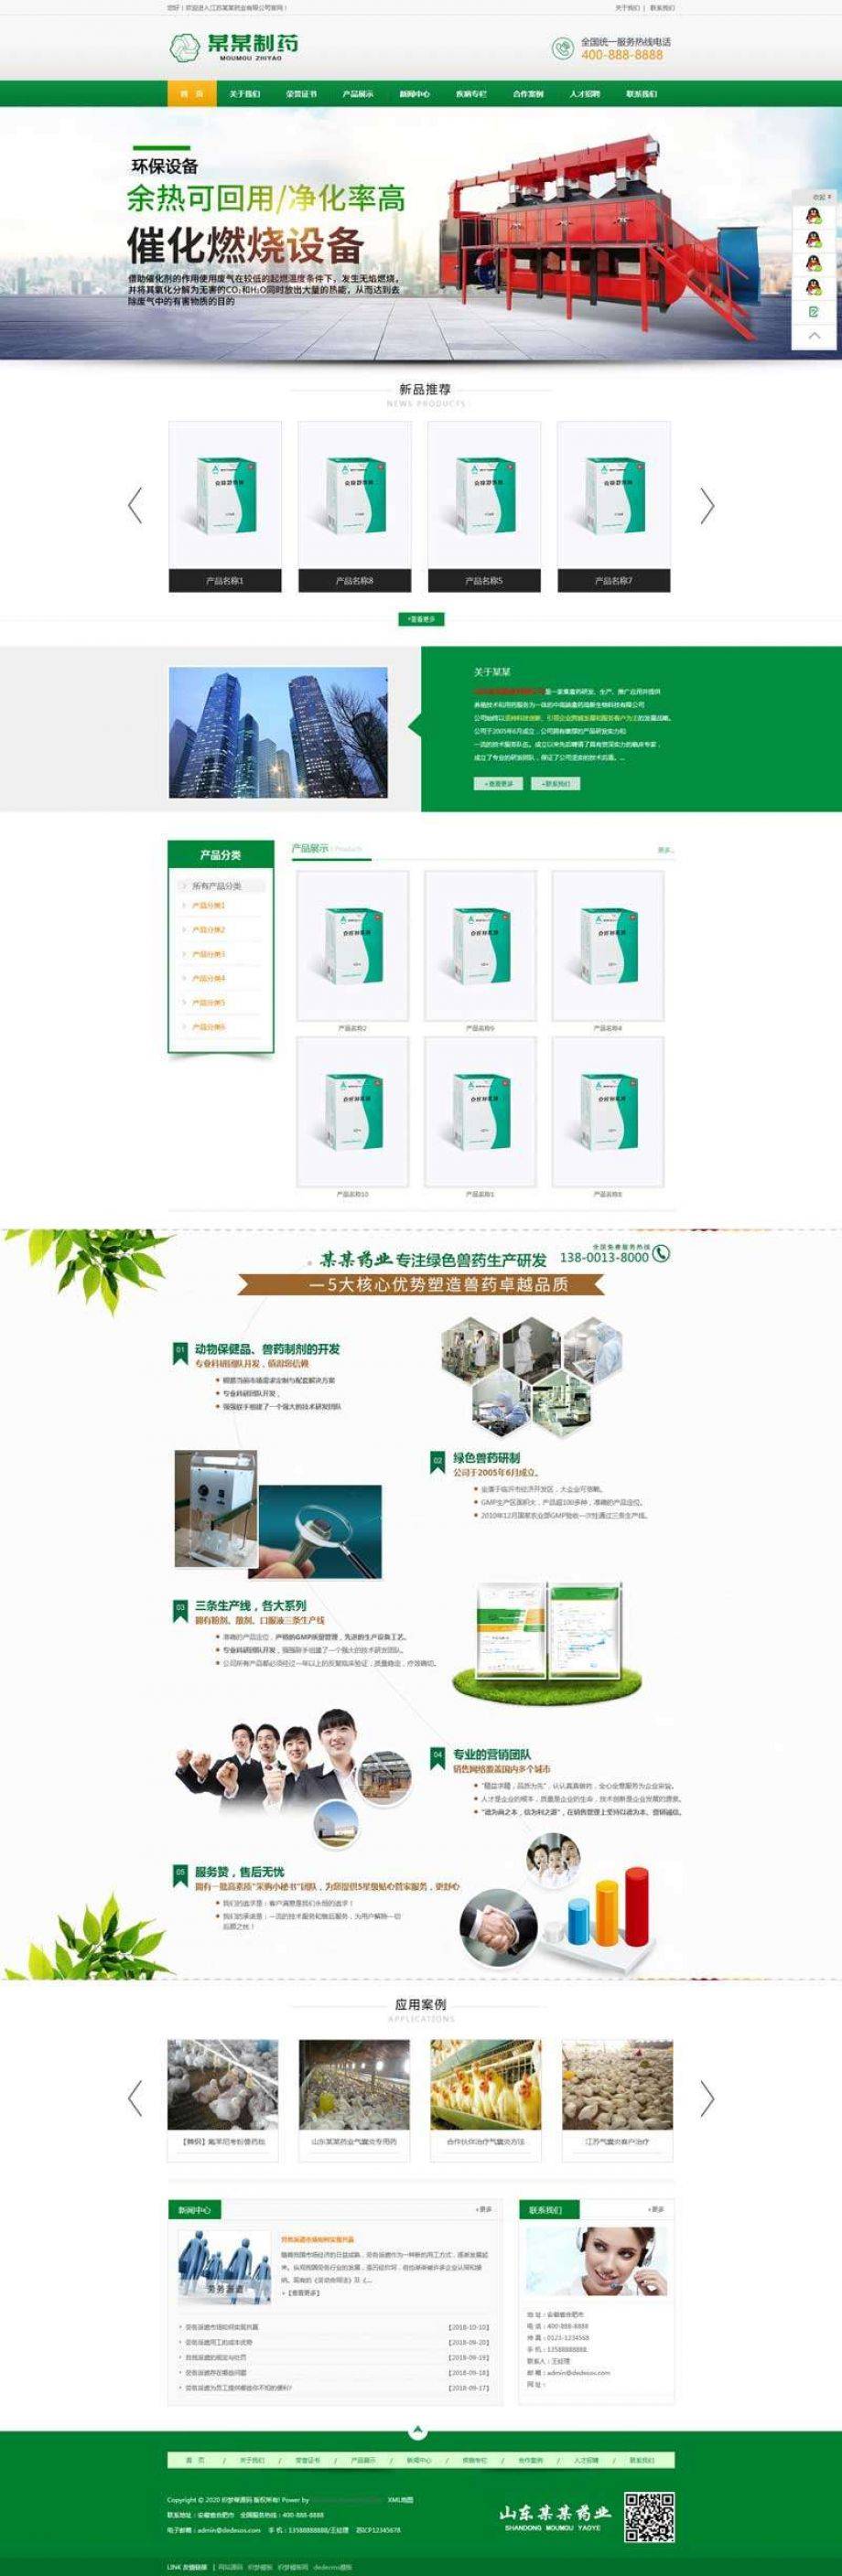 绿色制药药业集团官网织梦模板